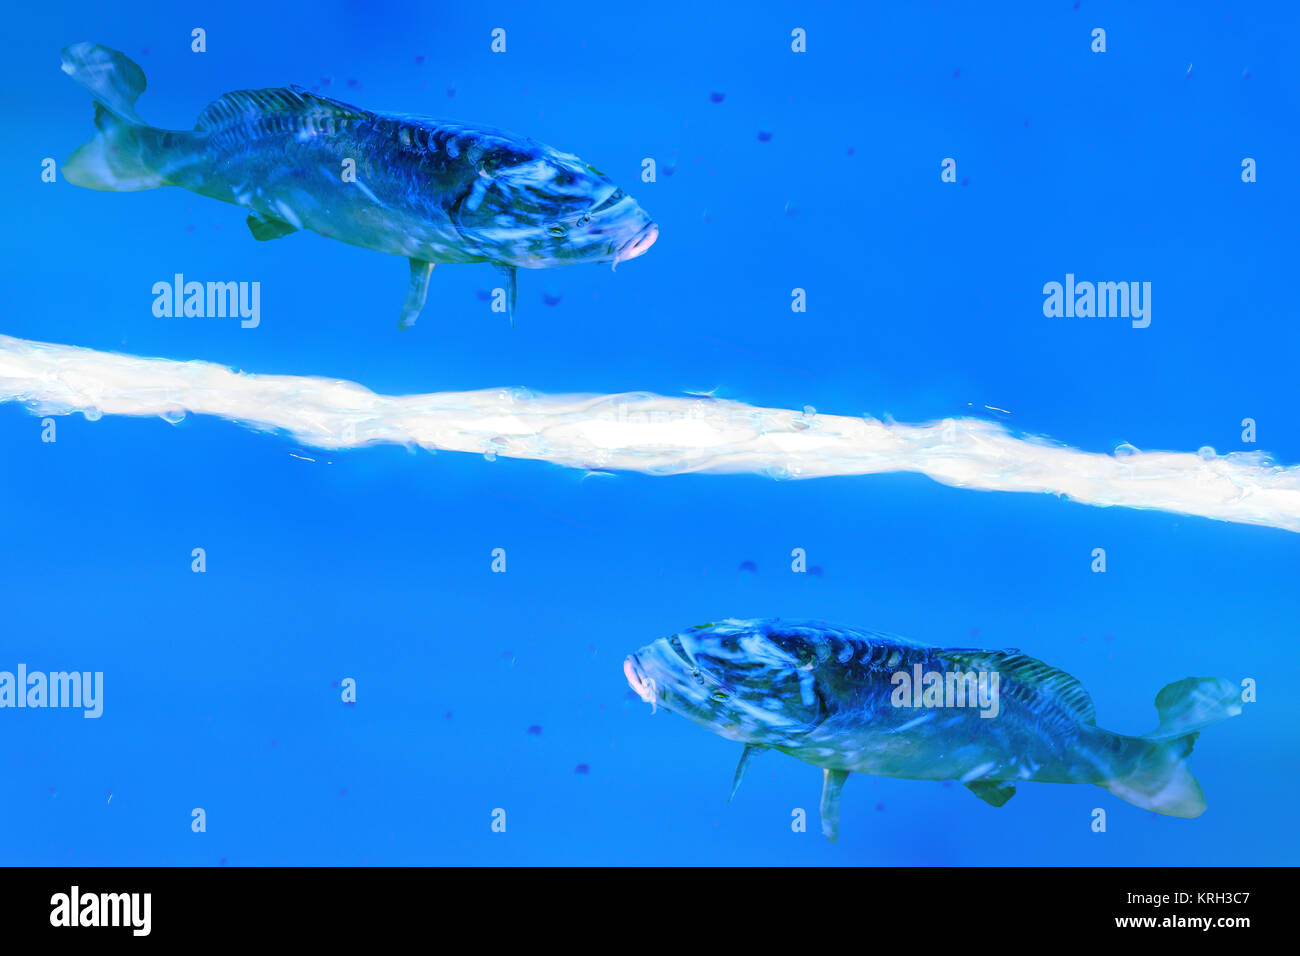 Abstrakter Hintergund. Zwei Fische schwimmen in einer blauen Flüssigkeit. Stock Photo